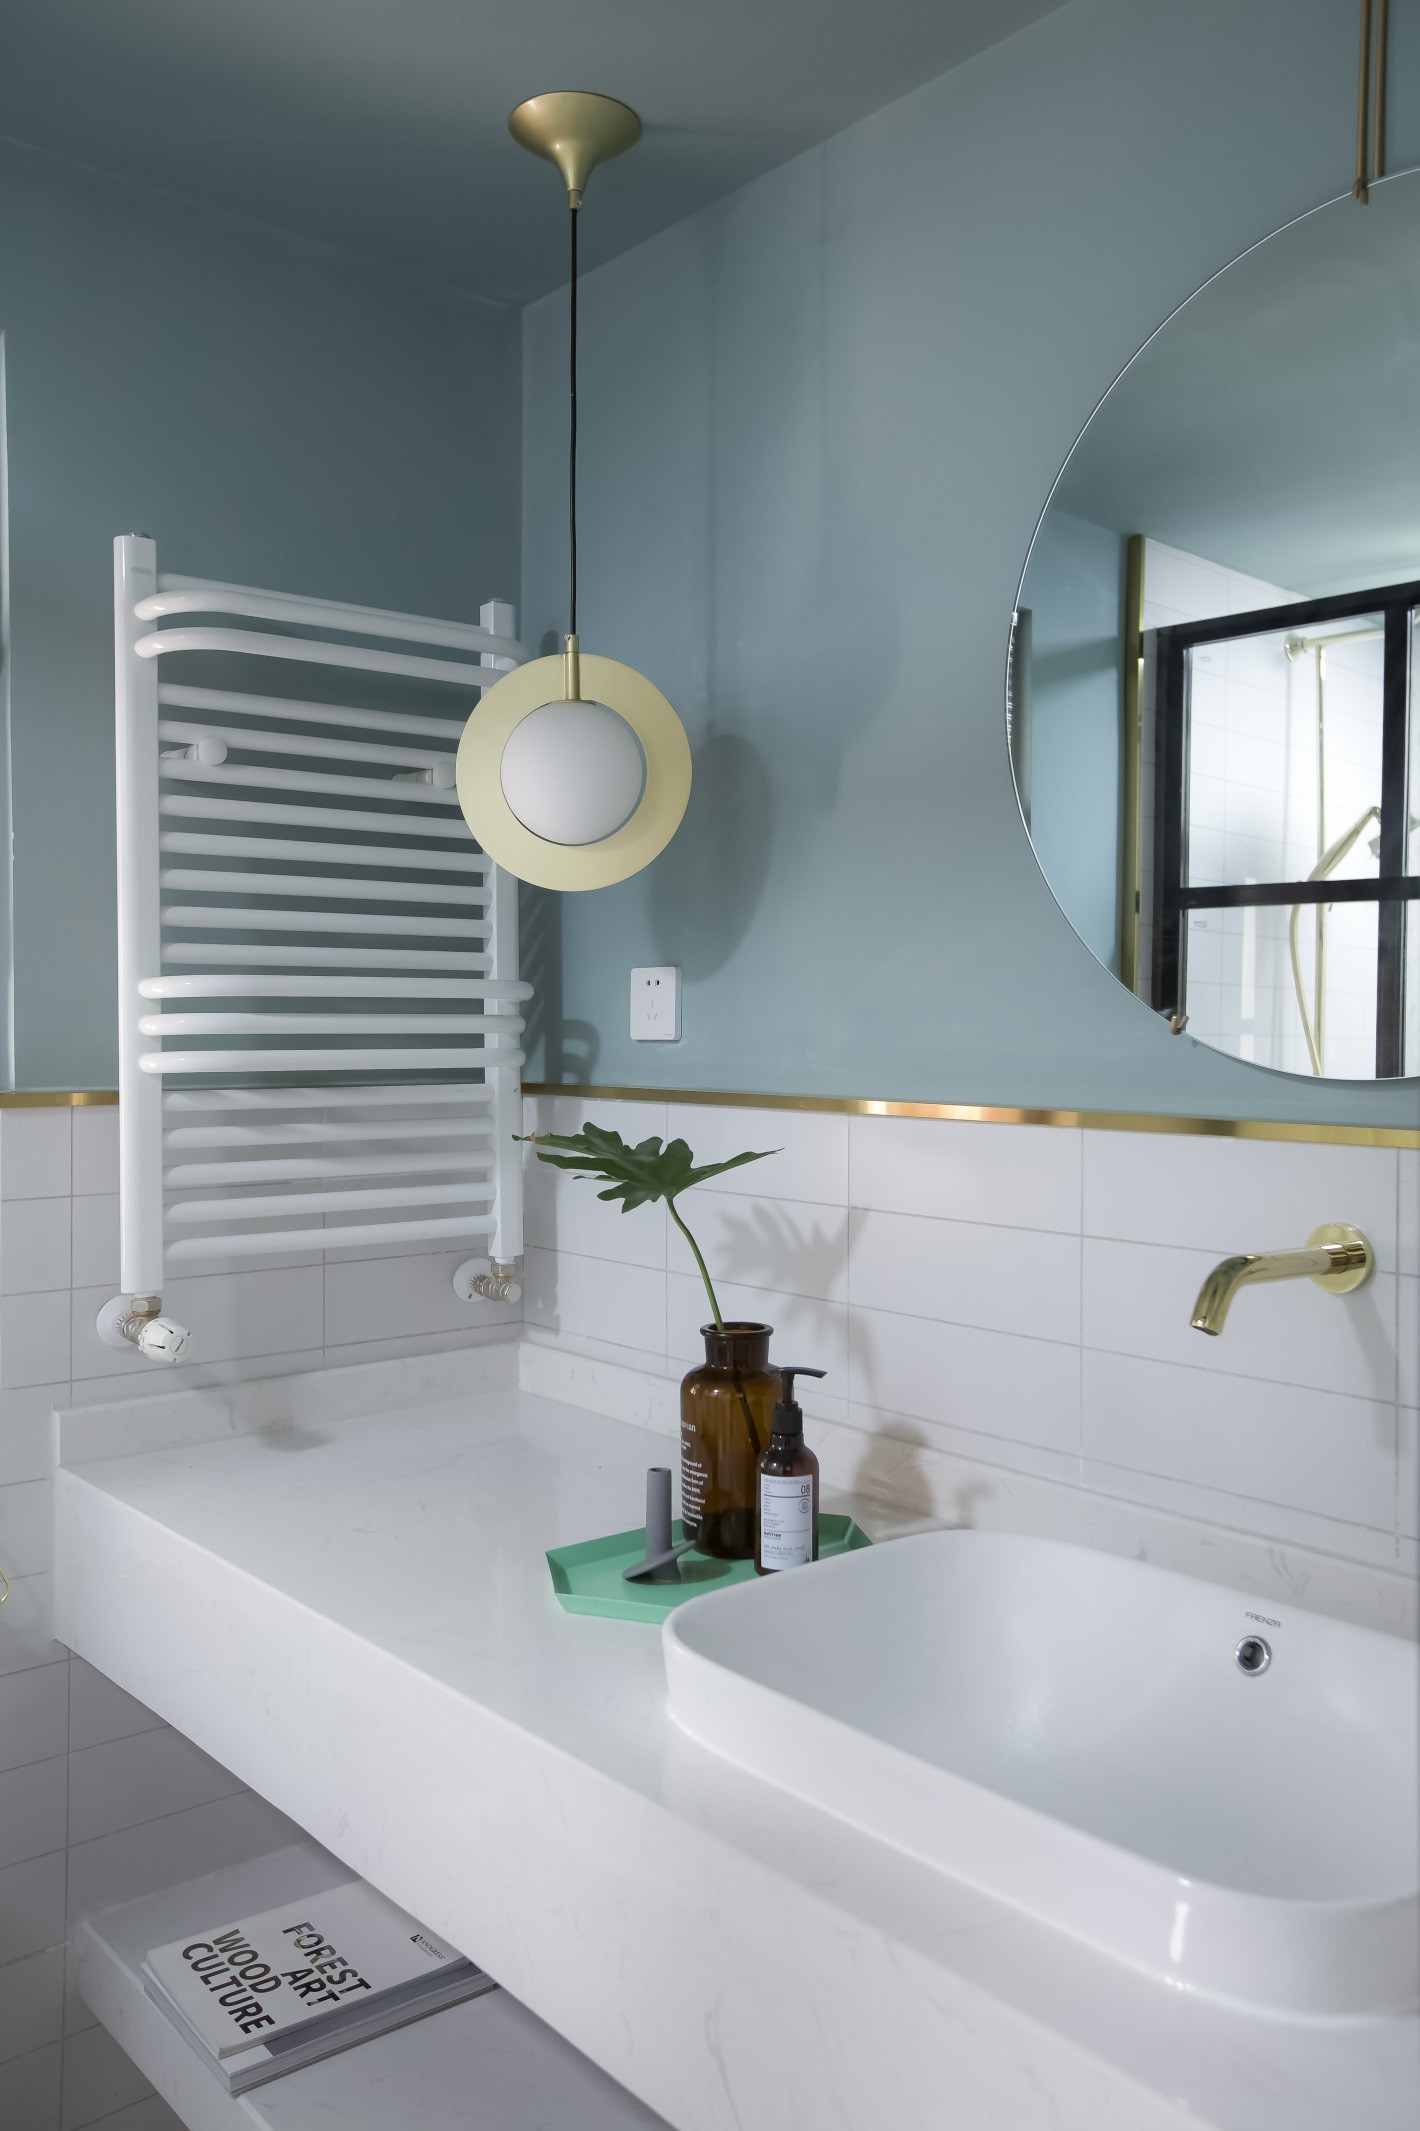 浅蓝色与白色的搭配尽显诗意与灵气，卫浴间通过对材质、造型和光线的设计，呈现出满满的品质感。